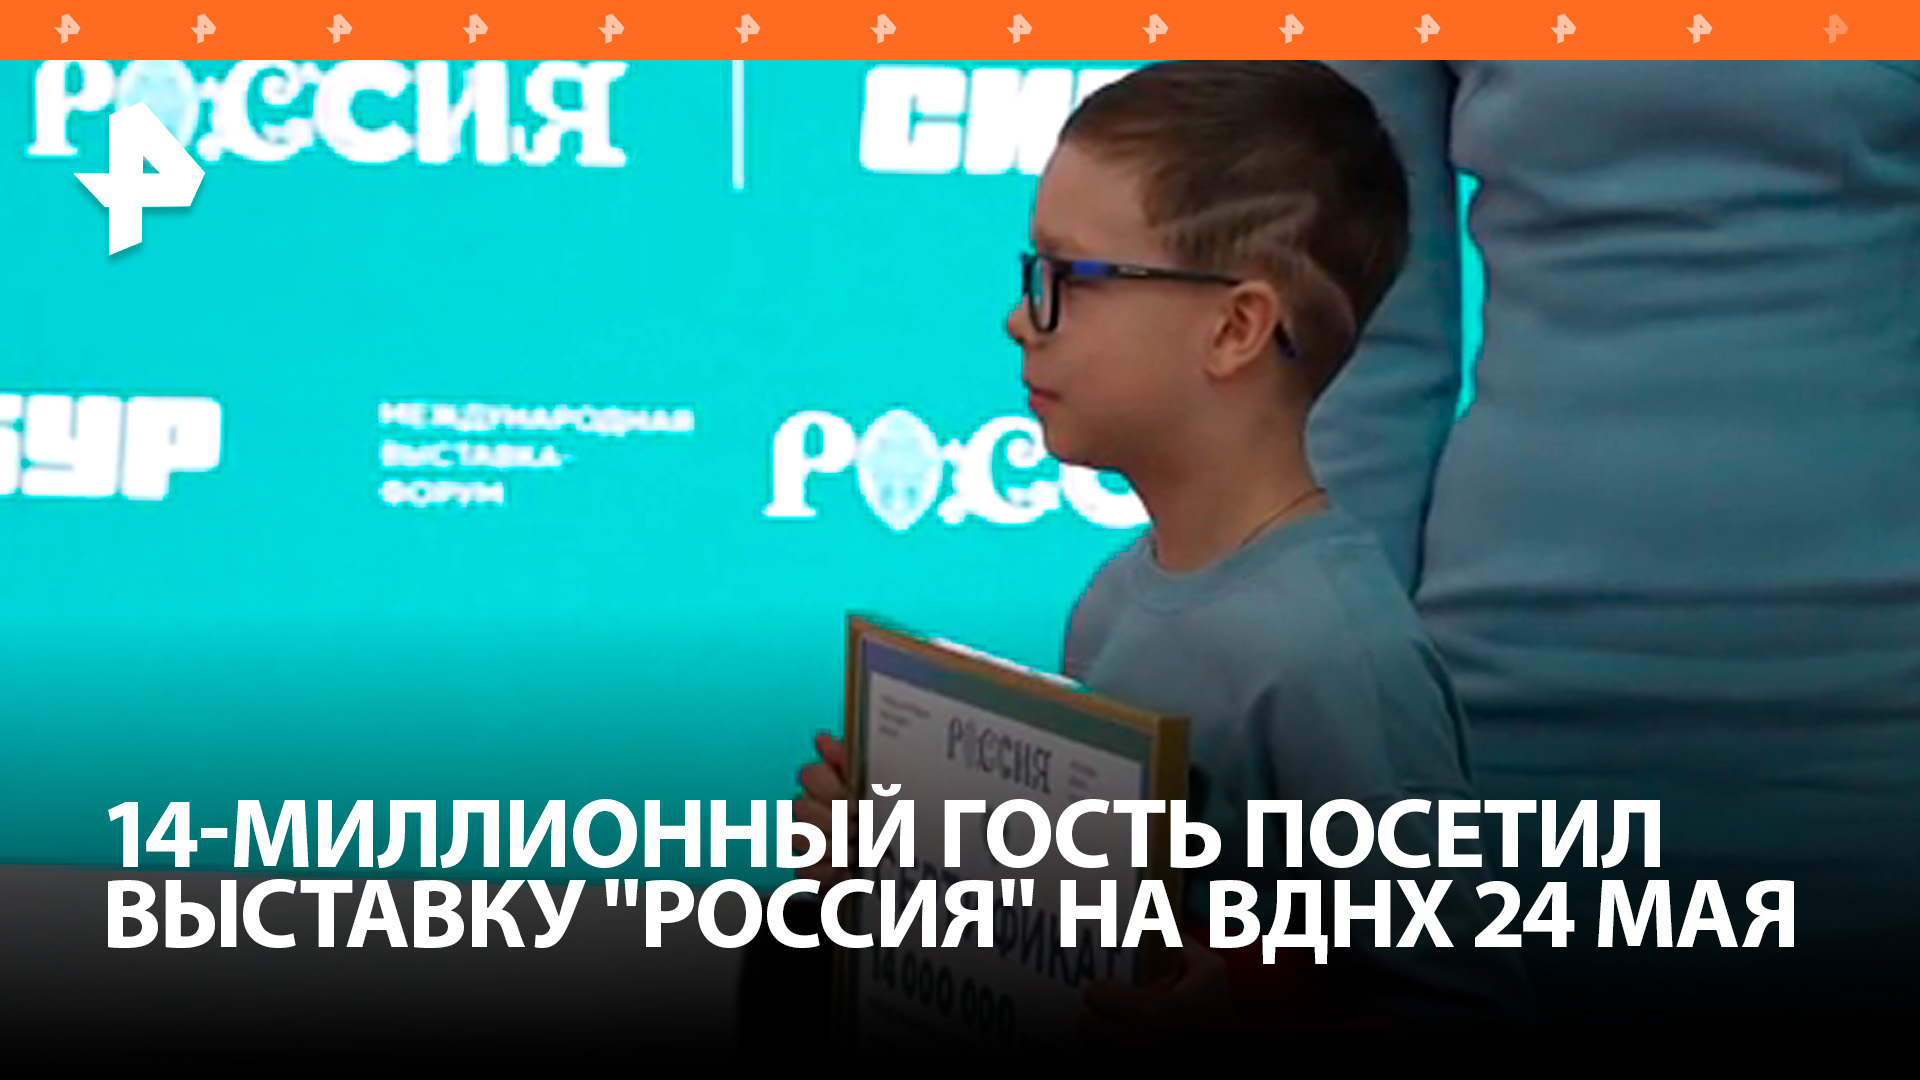 Восьмилетний мальчик стал 14-миллионным гостем выставки "Россия" / РЕН Новости